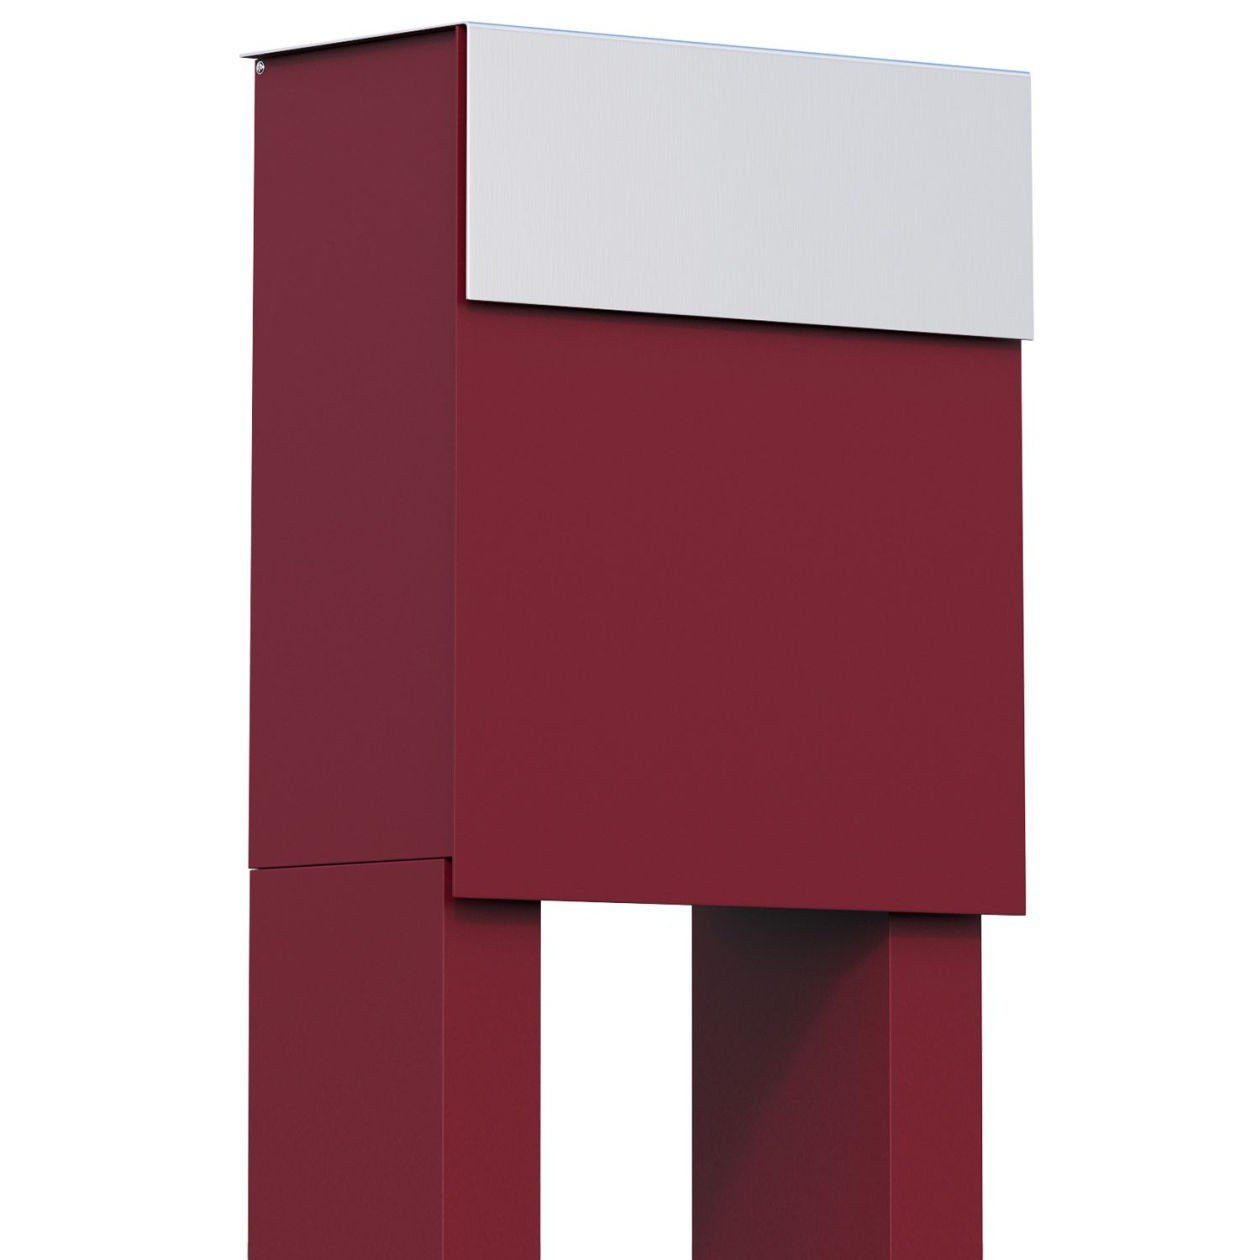 Bravios Briefkasten Standbriefkasten Alto Rot mit Edelstahlklappe